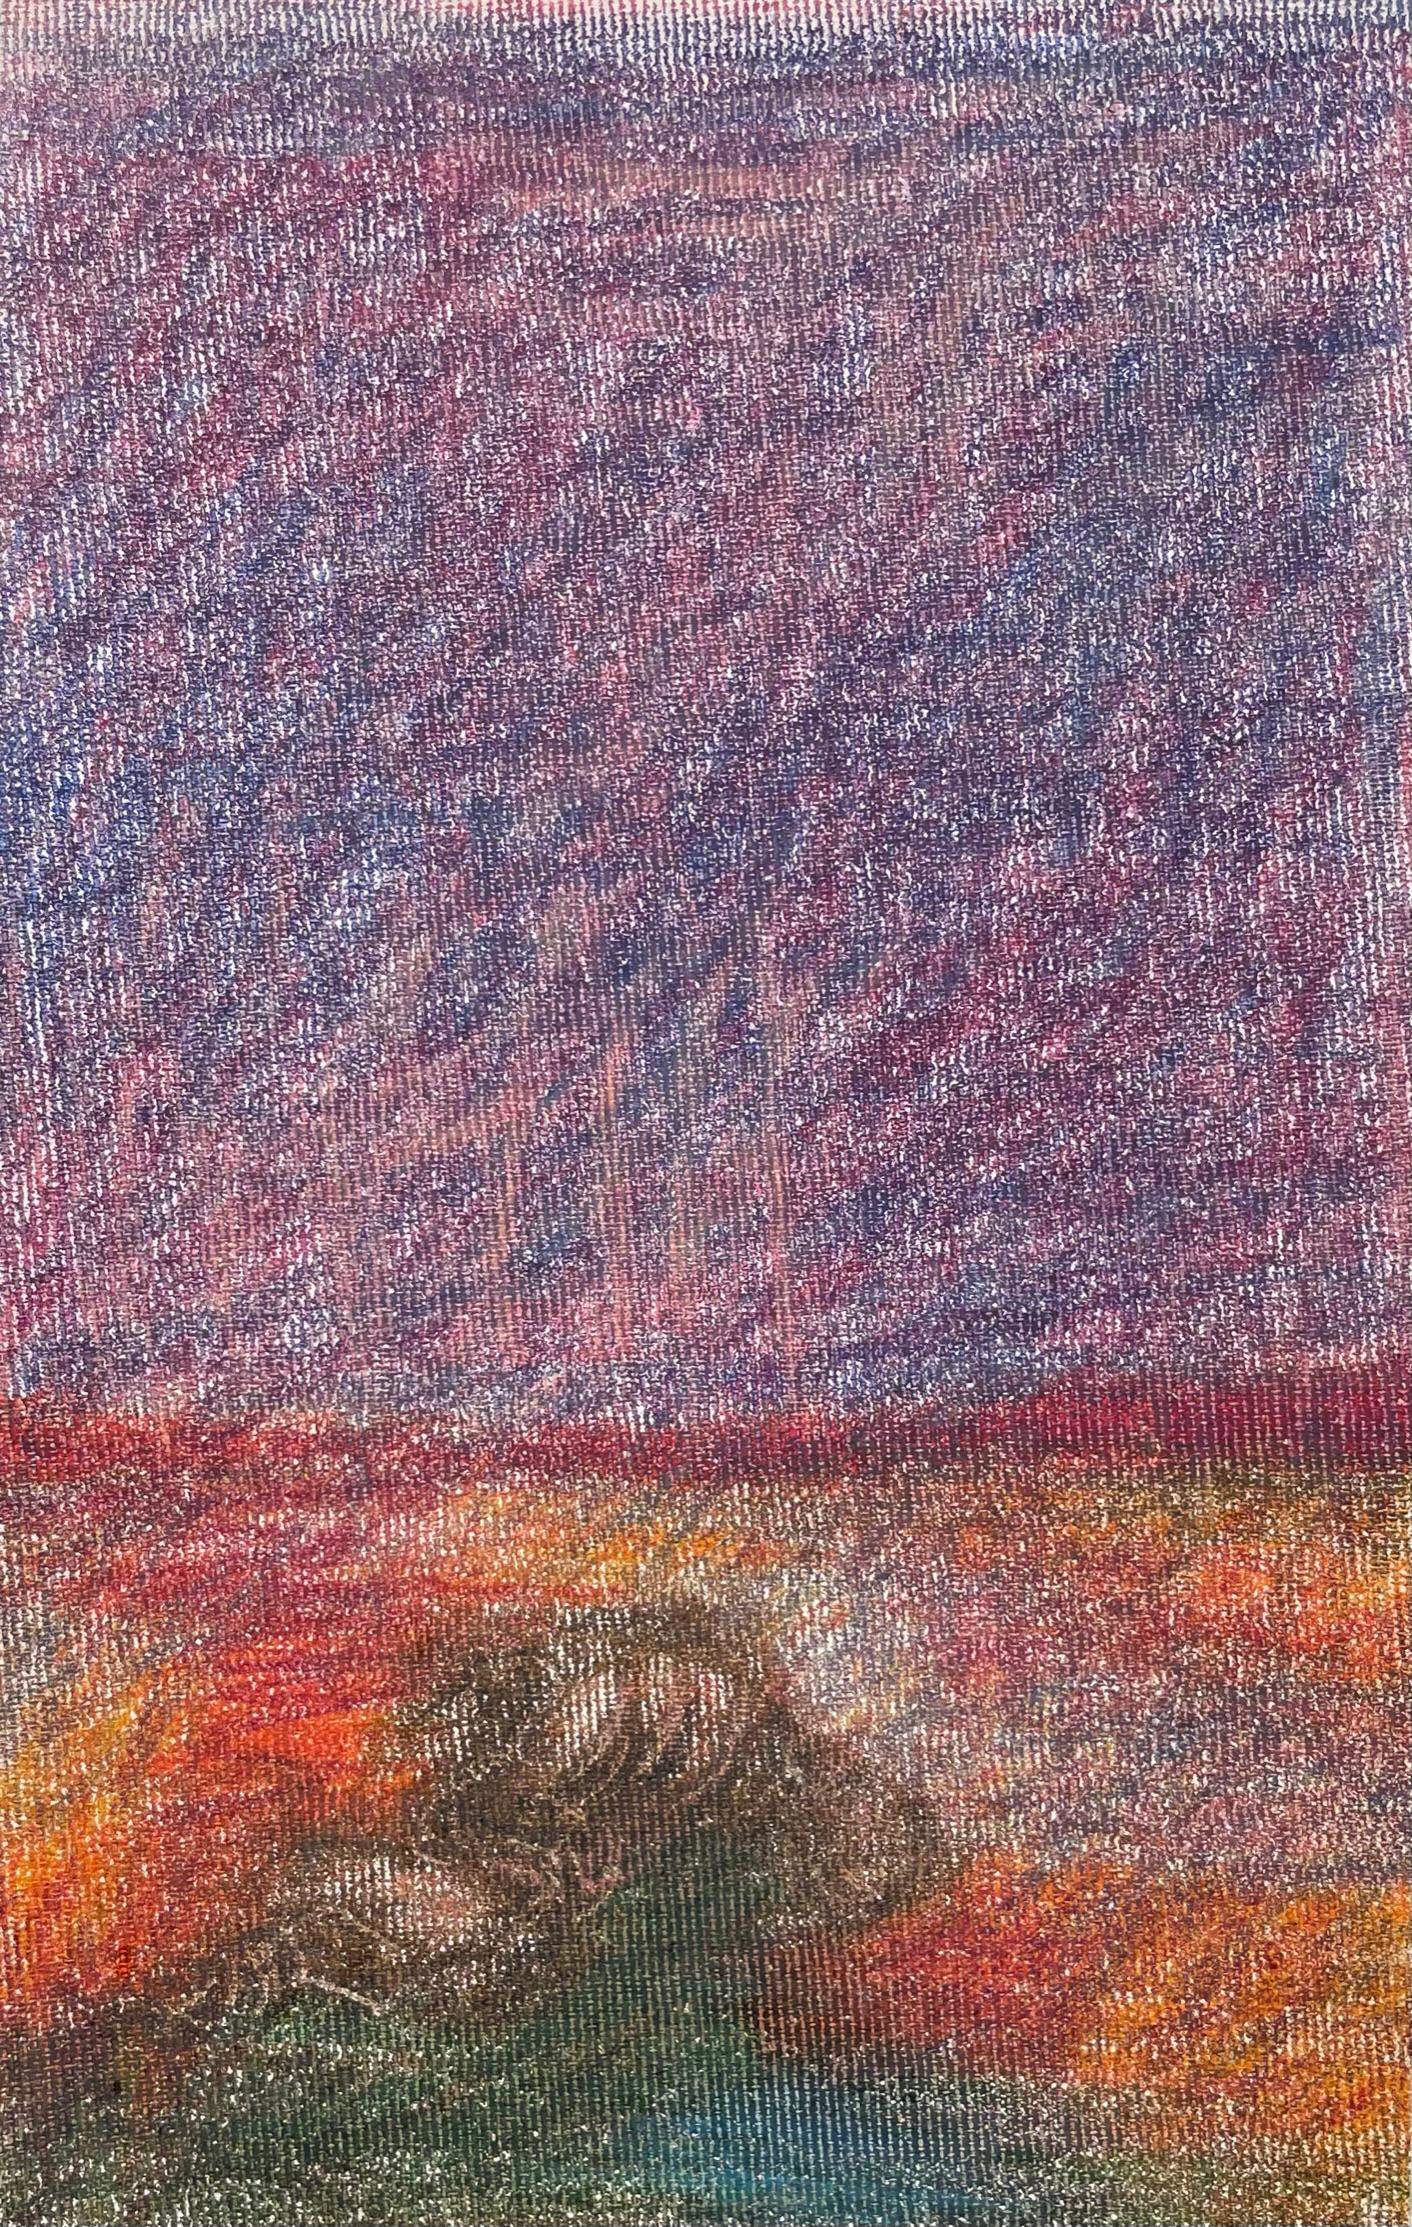 Body in the Field #1 - Rot, Landschaft, Bleistift, Zeichnung mit Farbstift